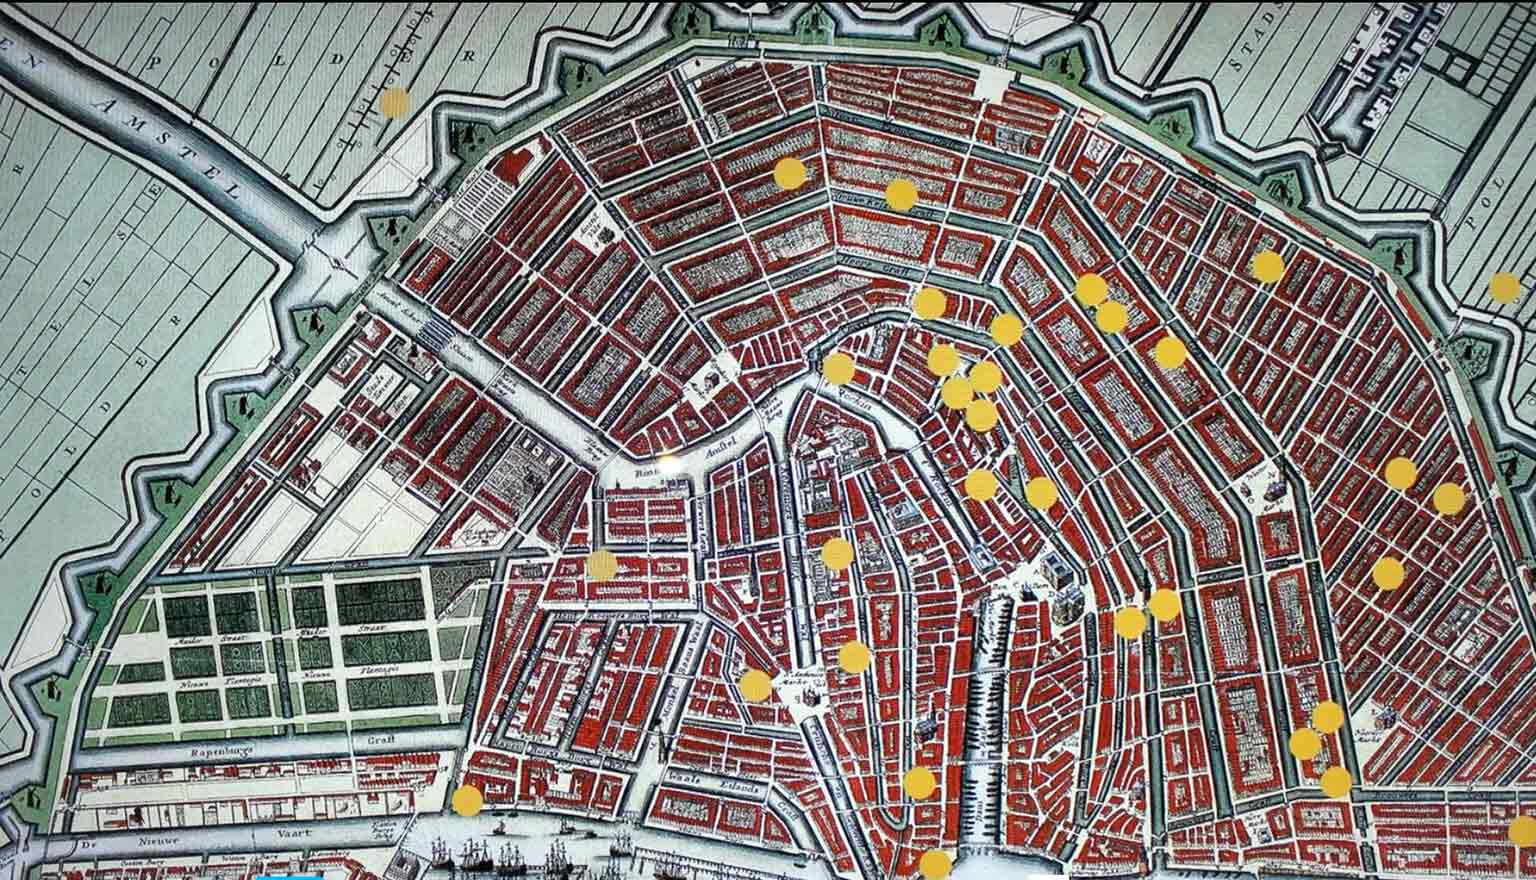 Kaart met katholieke schuilkerken in Amsterdam, 1578-1853